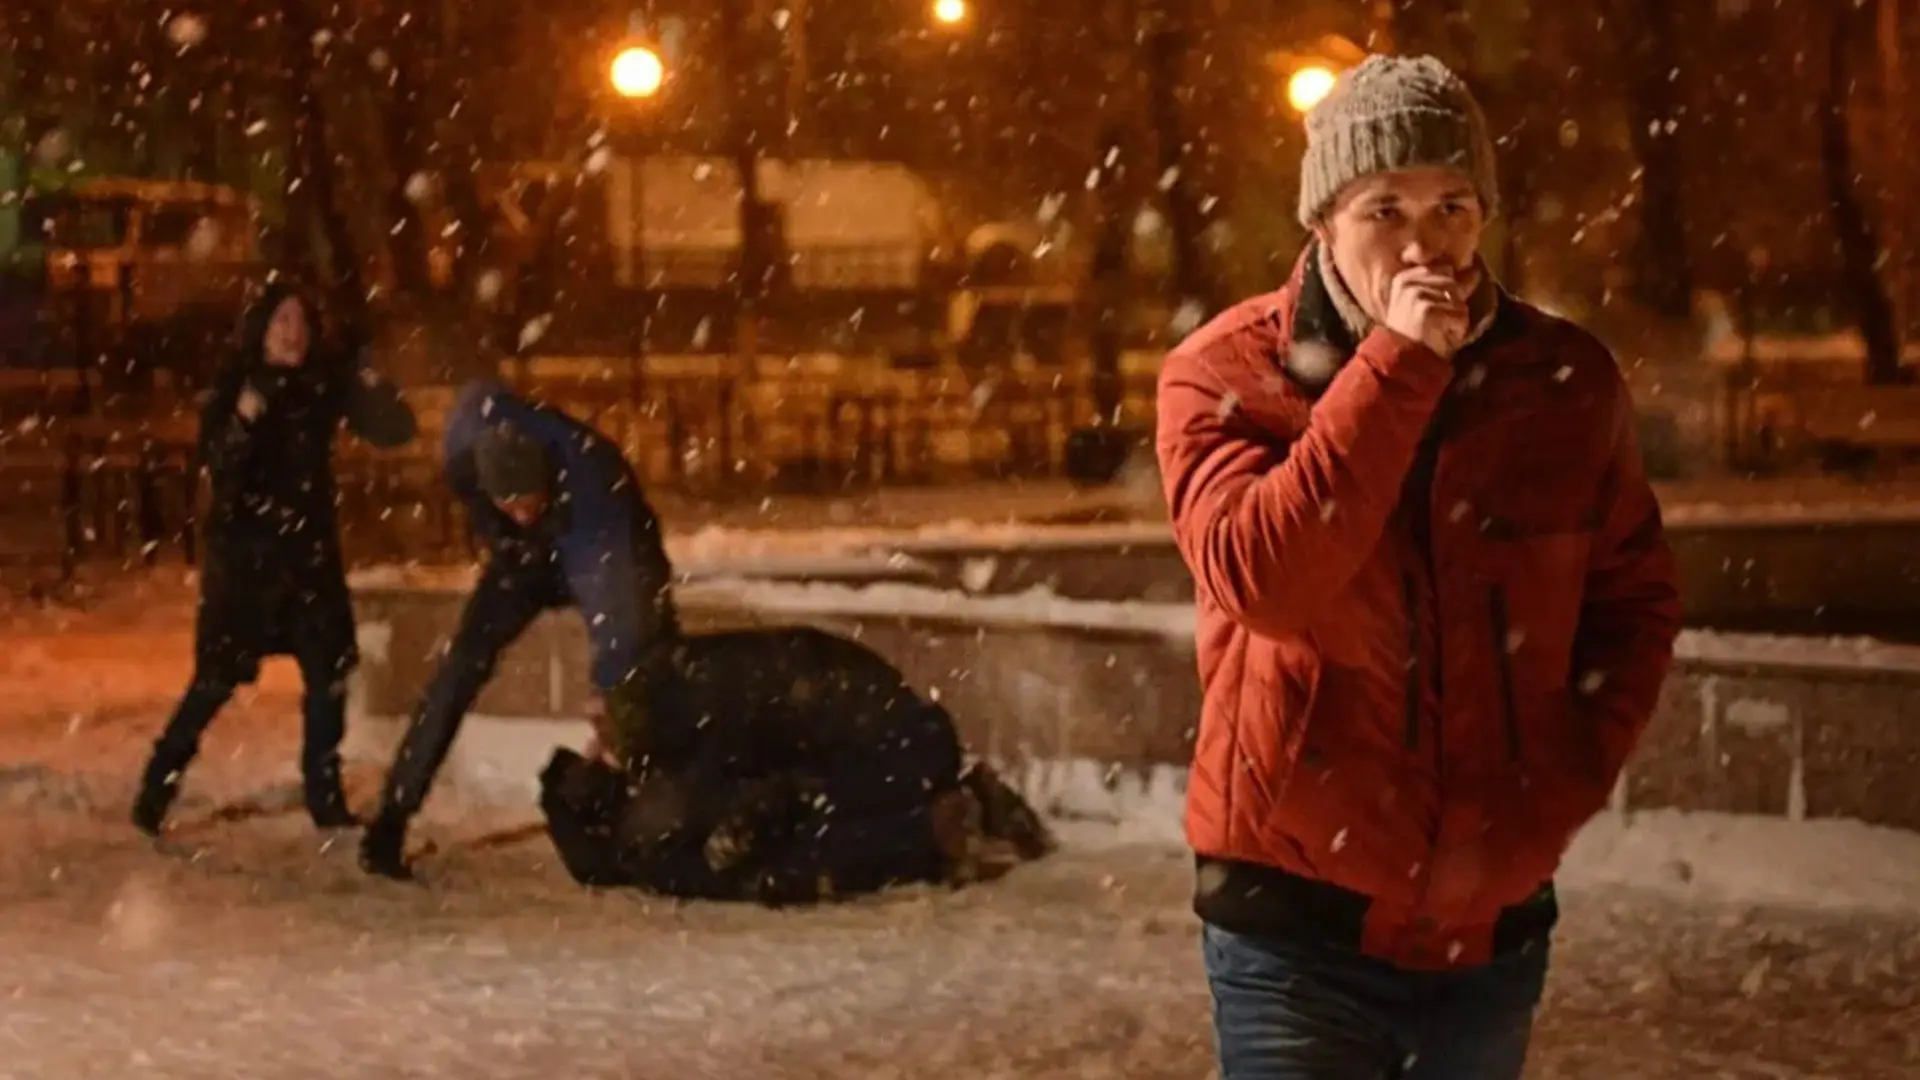 مرد در حال سرفه کردن در فیلم احمق ۳۰ تا از بهترین فیلم های روسی بهمراه امتیاز IMDB ایتی مایتی